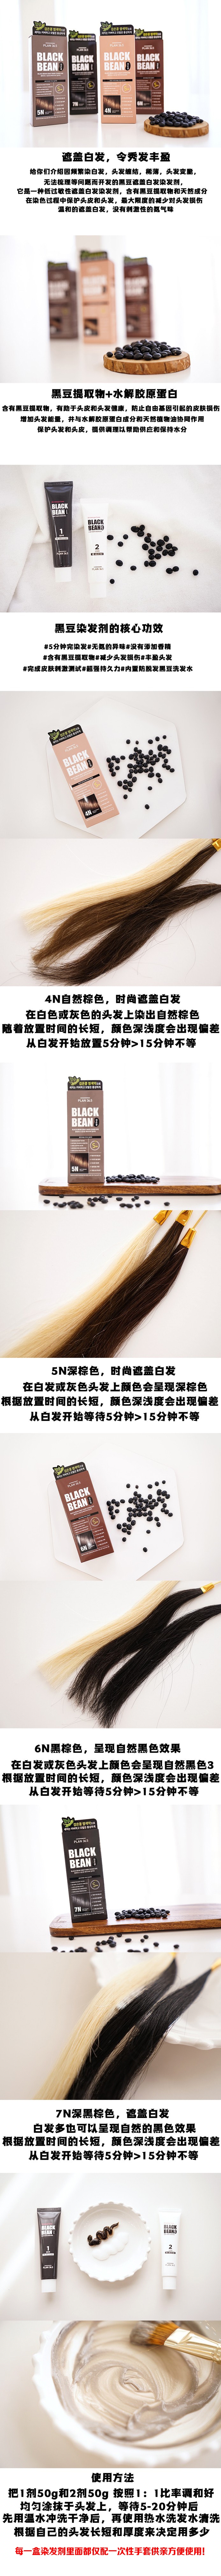 韩国 【黑豆染发】 Plan 36.5 黑豆 防脱发滋润染发剂 可染白发 #4N 浅棕色